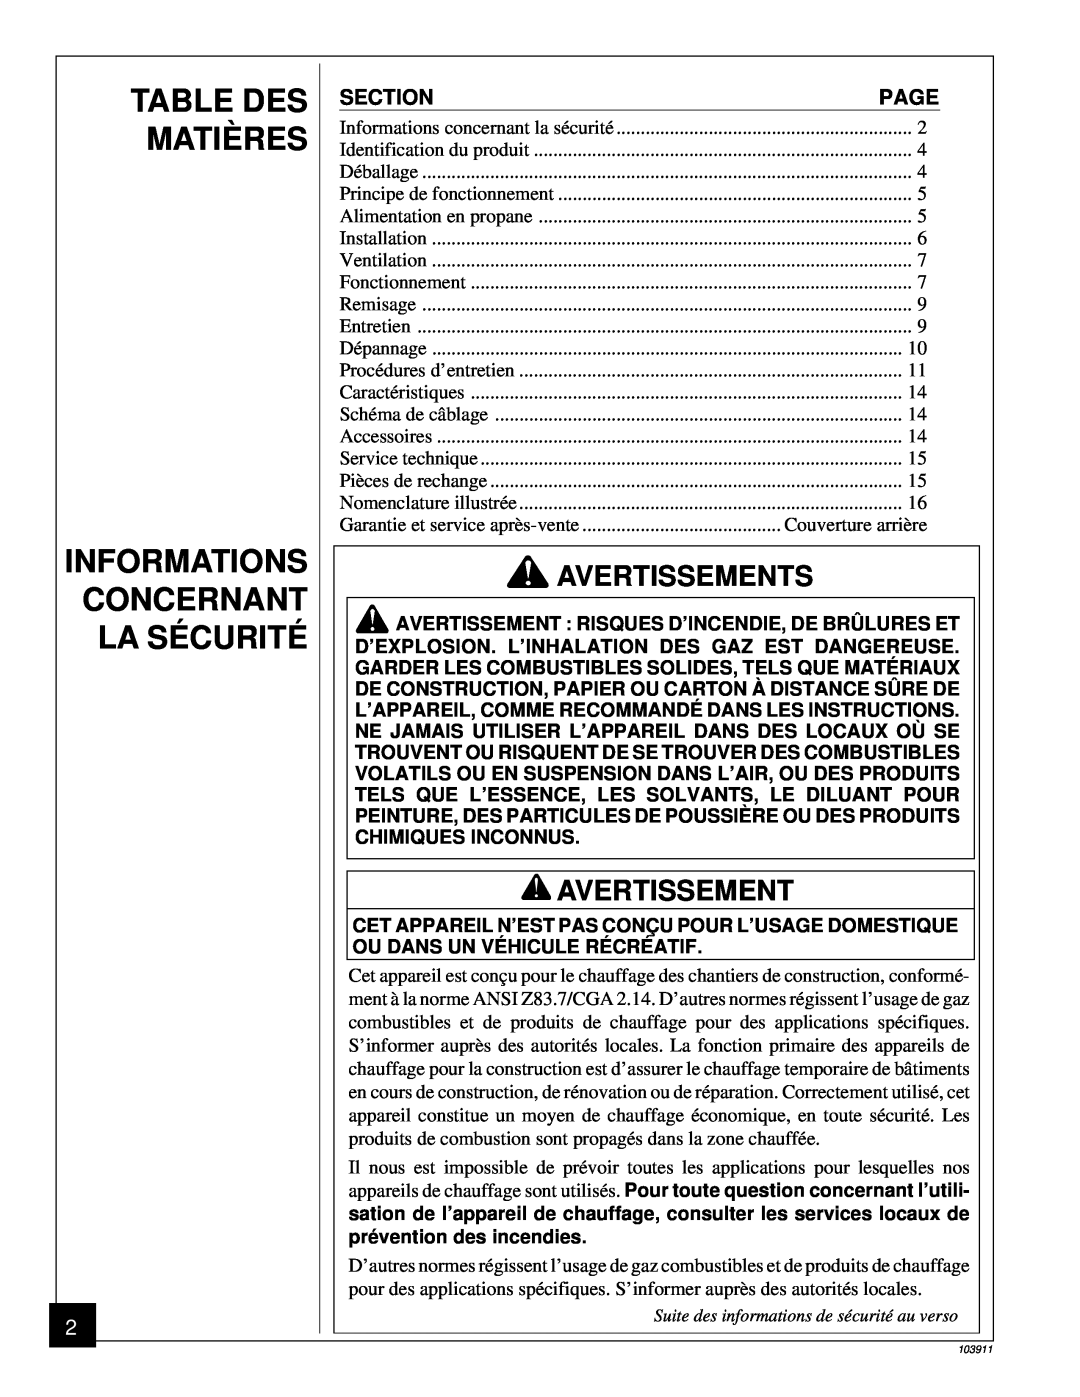 Desa RCLP50B owner manual Table Des Matières, Informations Concernant La Sécurité, Avertissement 